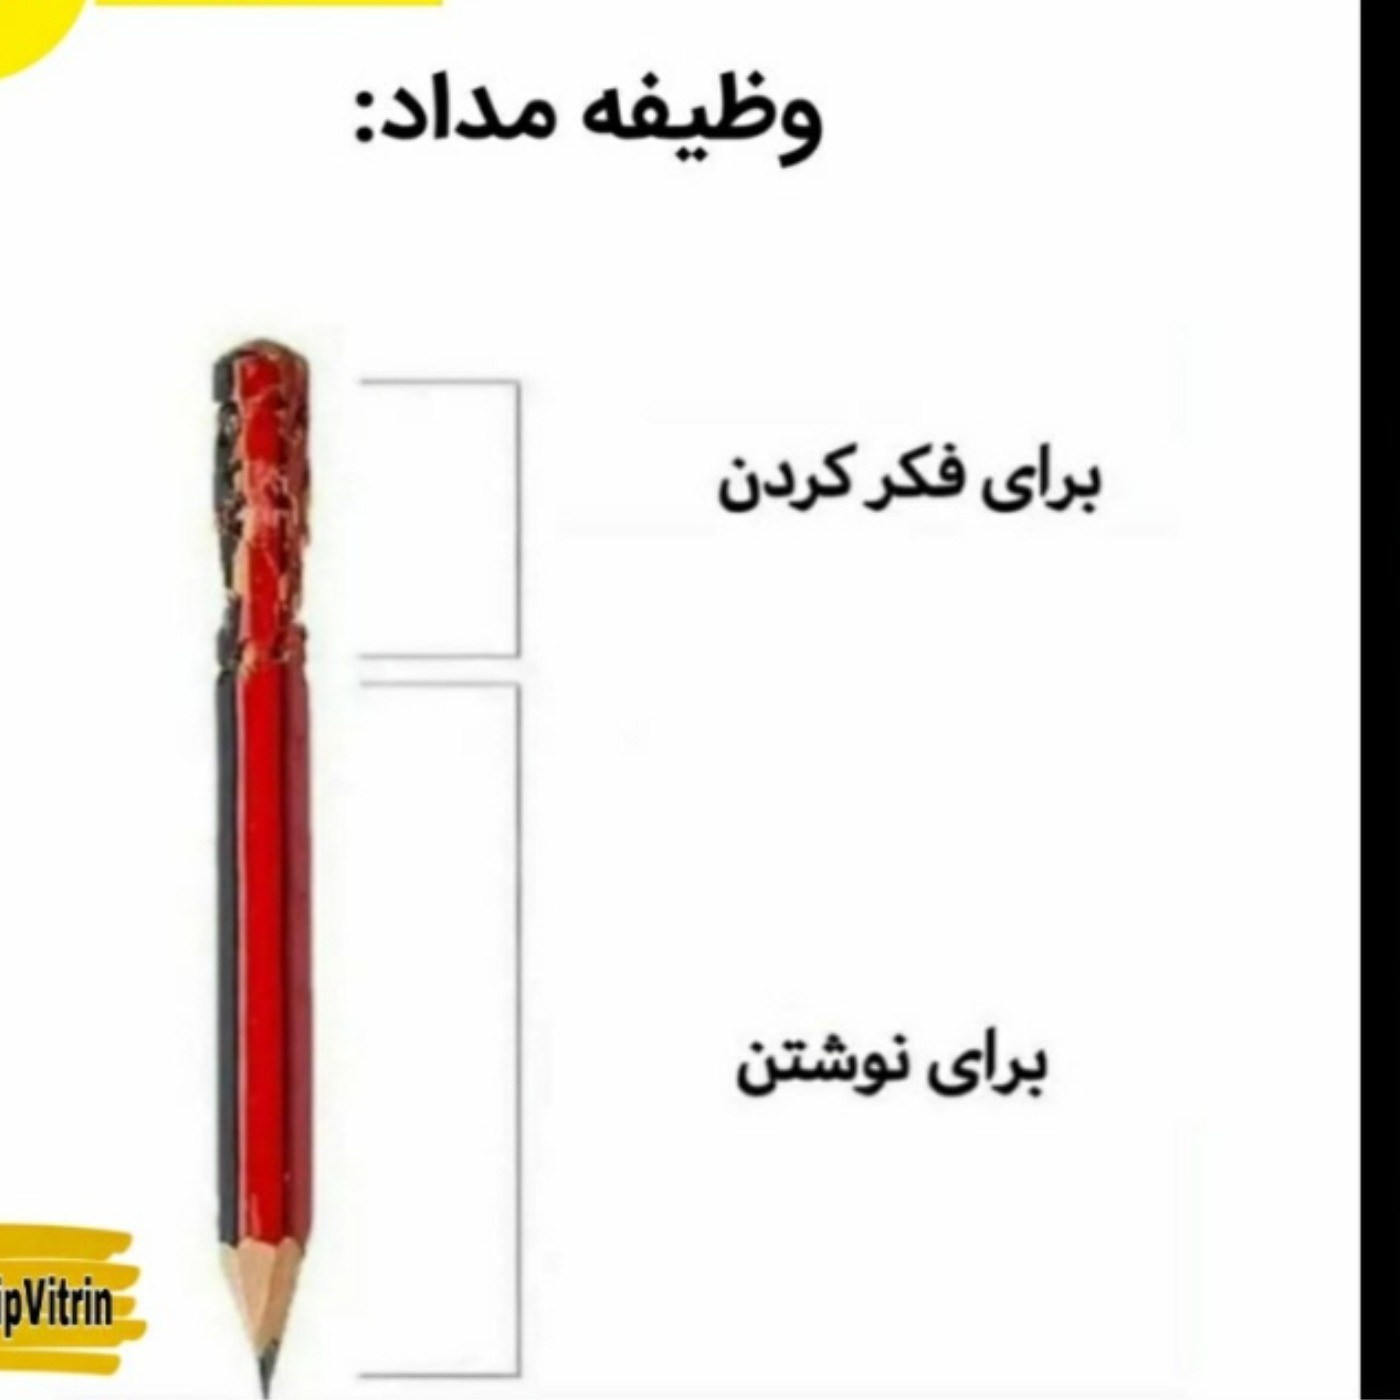 وظیفه مداد در ایران وبرای ایرانی ها